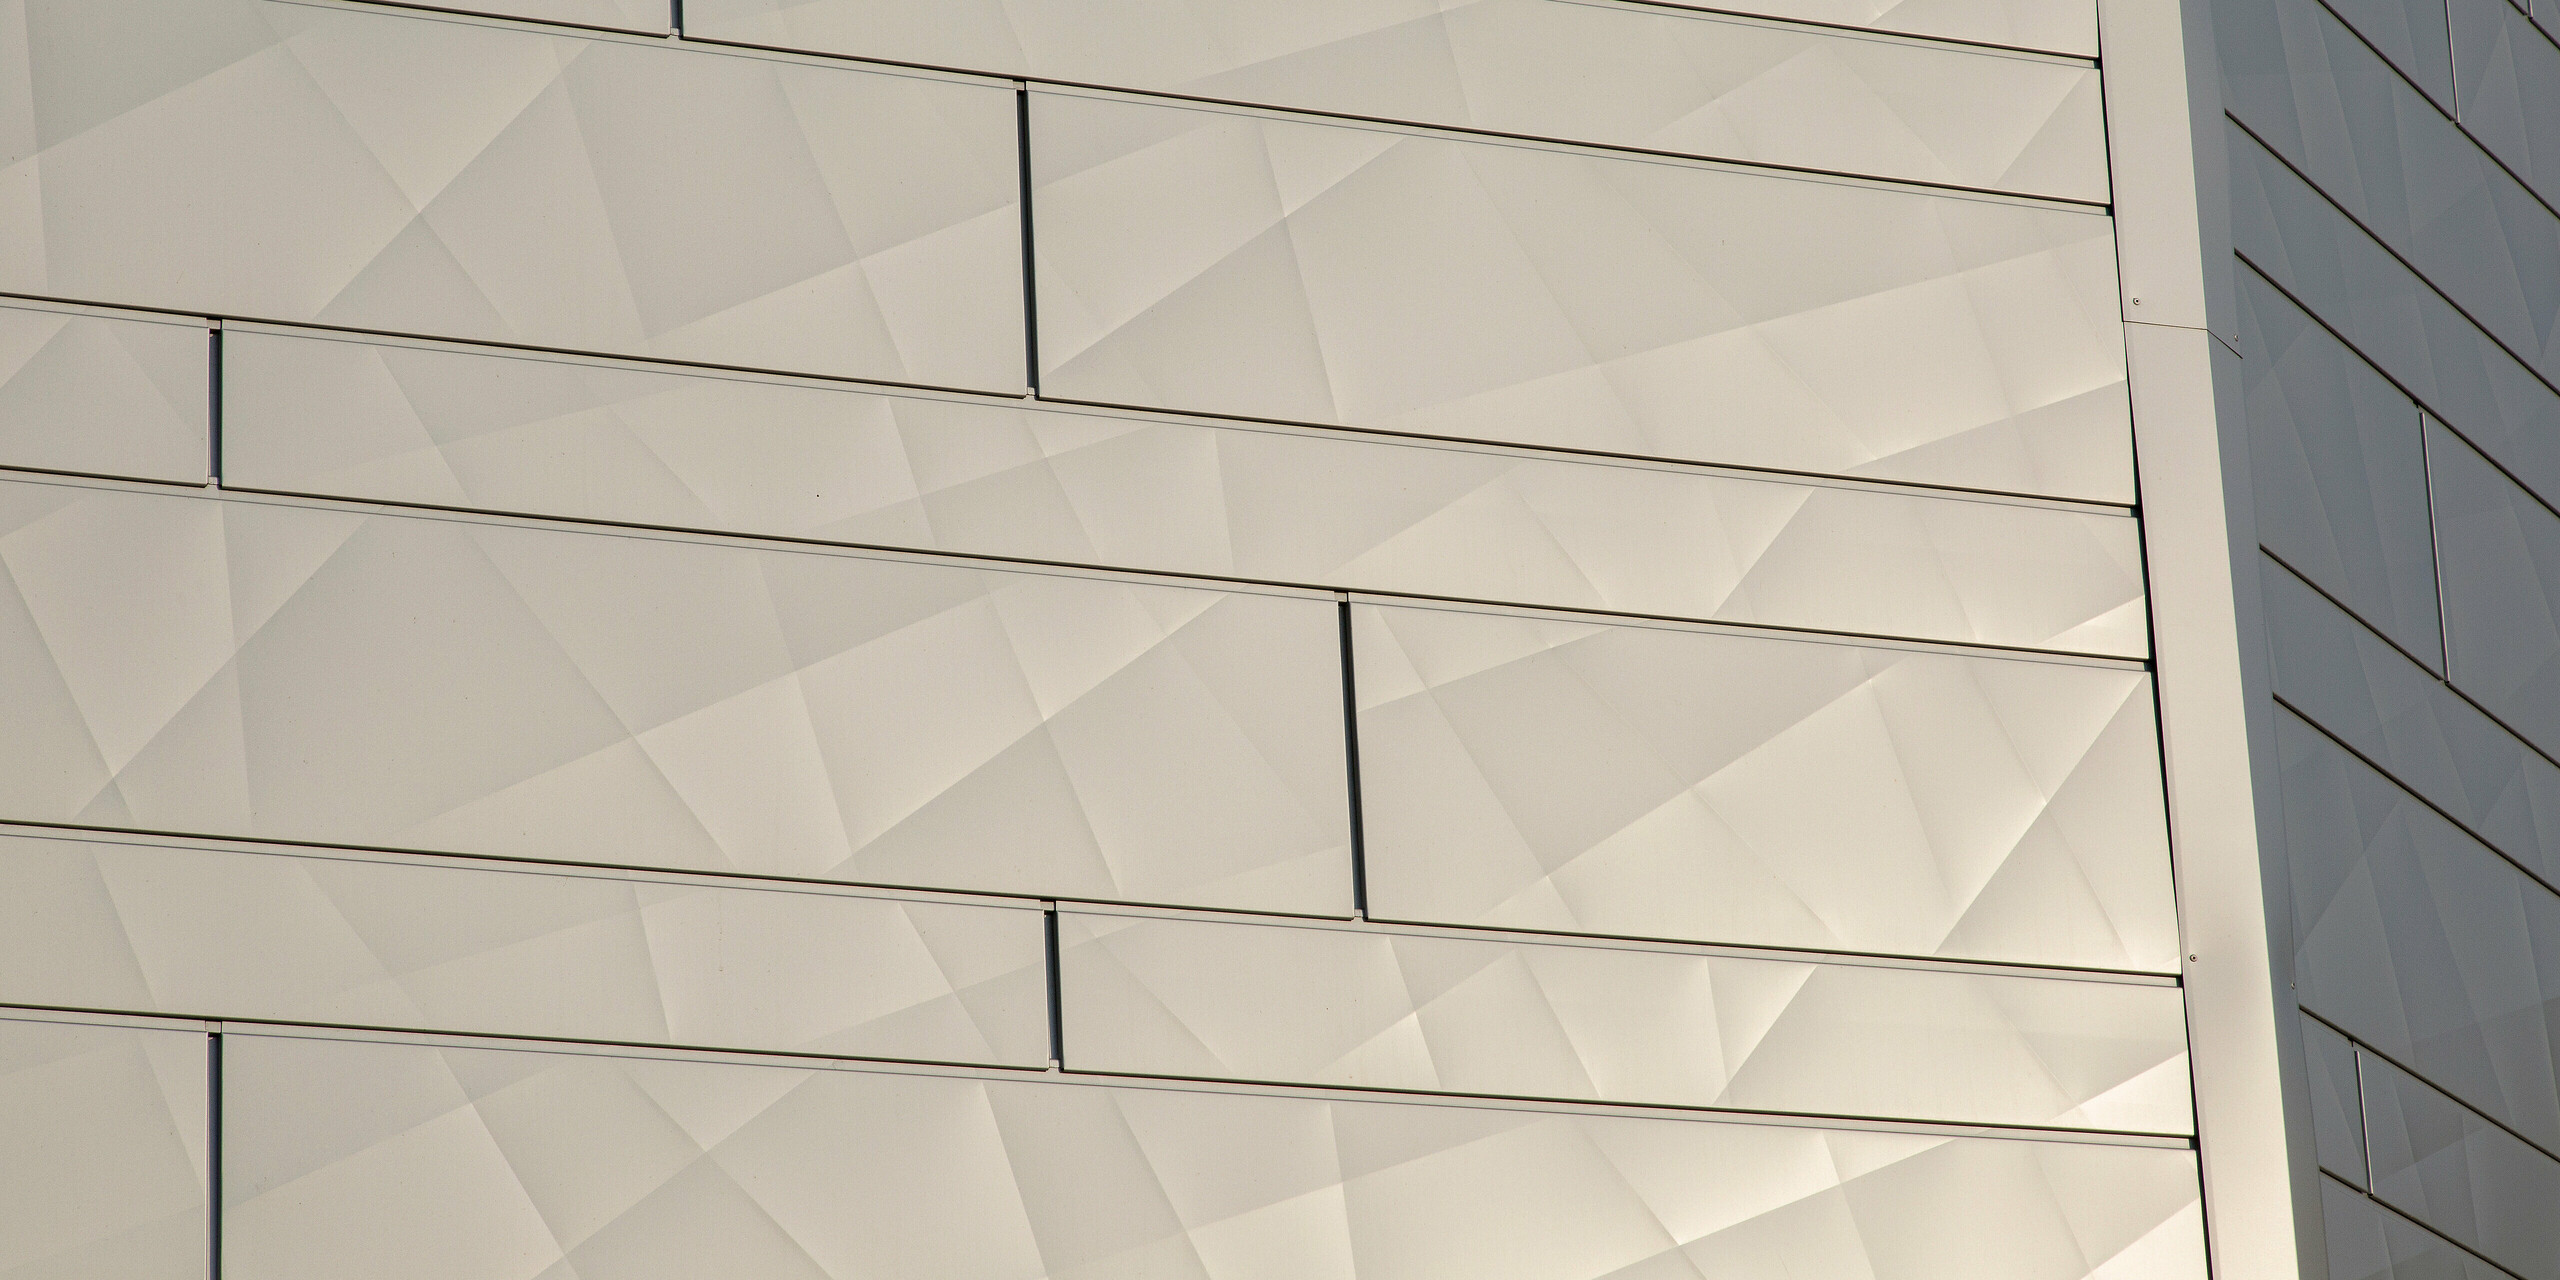 Detailansicht Gebäudekante mit schimmernden PREFA Siding.X Fassadenpaneelen in Silbermetallic am Optik- und Akustik-Shop AFFLELOU in Auray, Frankreich